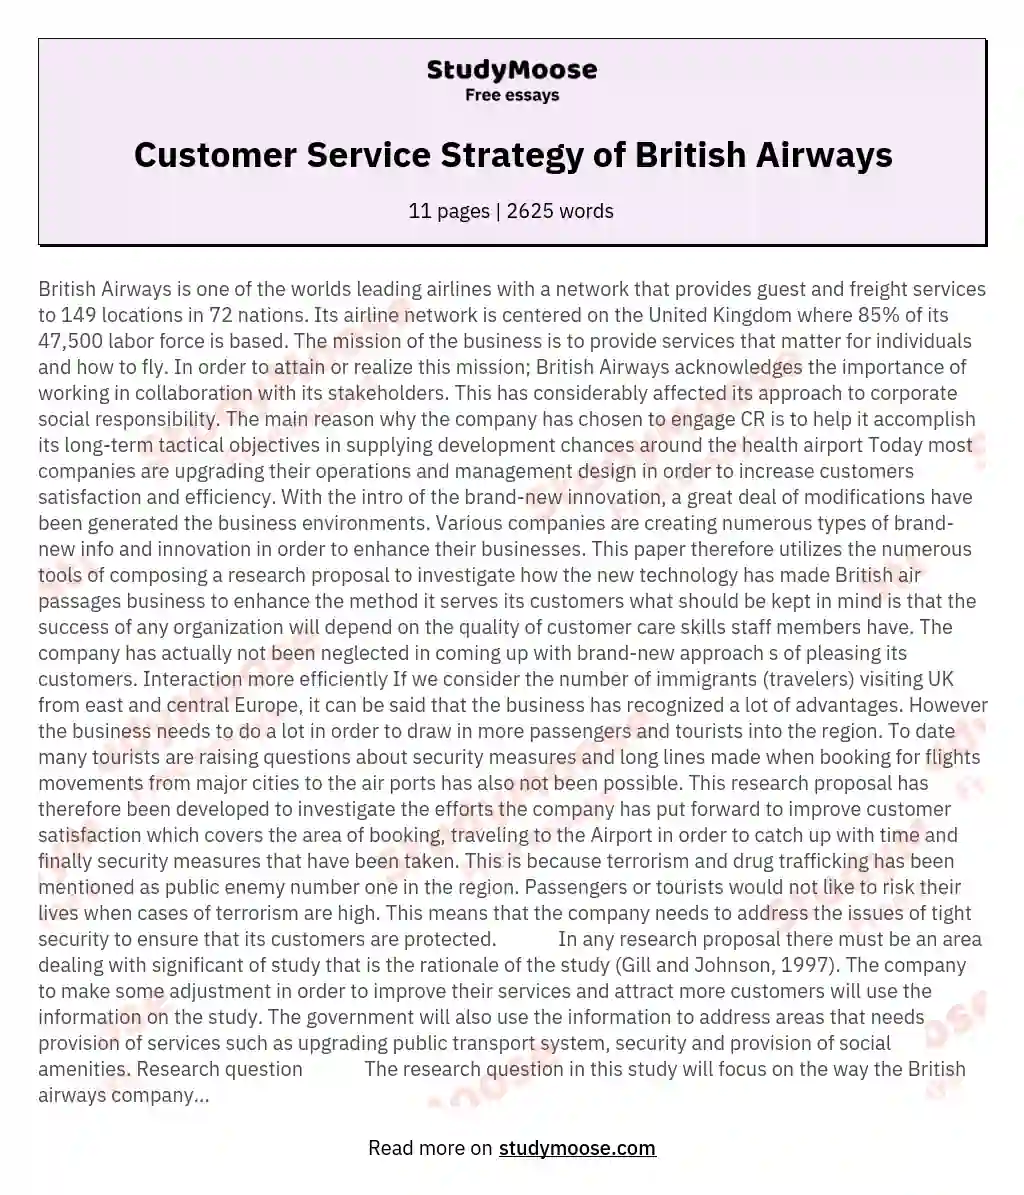 Customer Service Strategy of British Airways essay